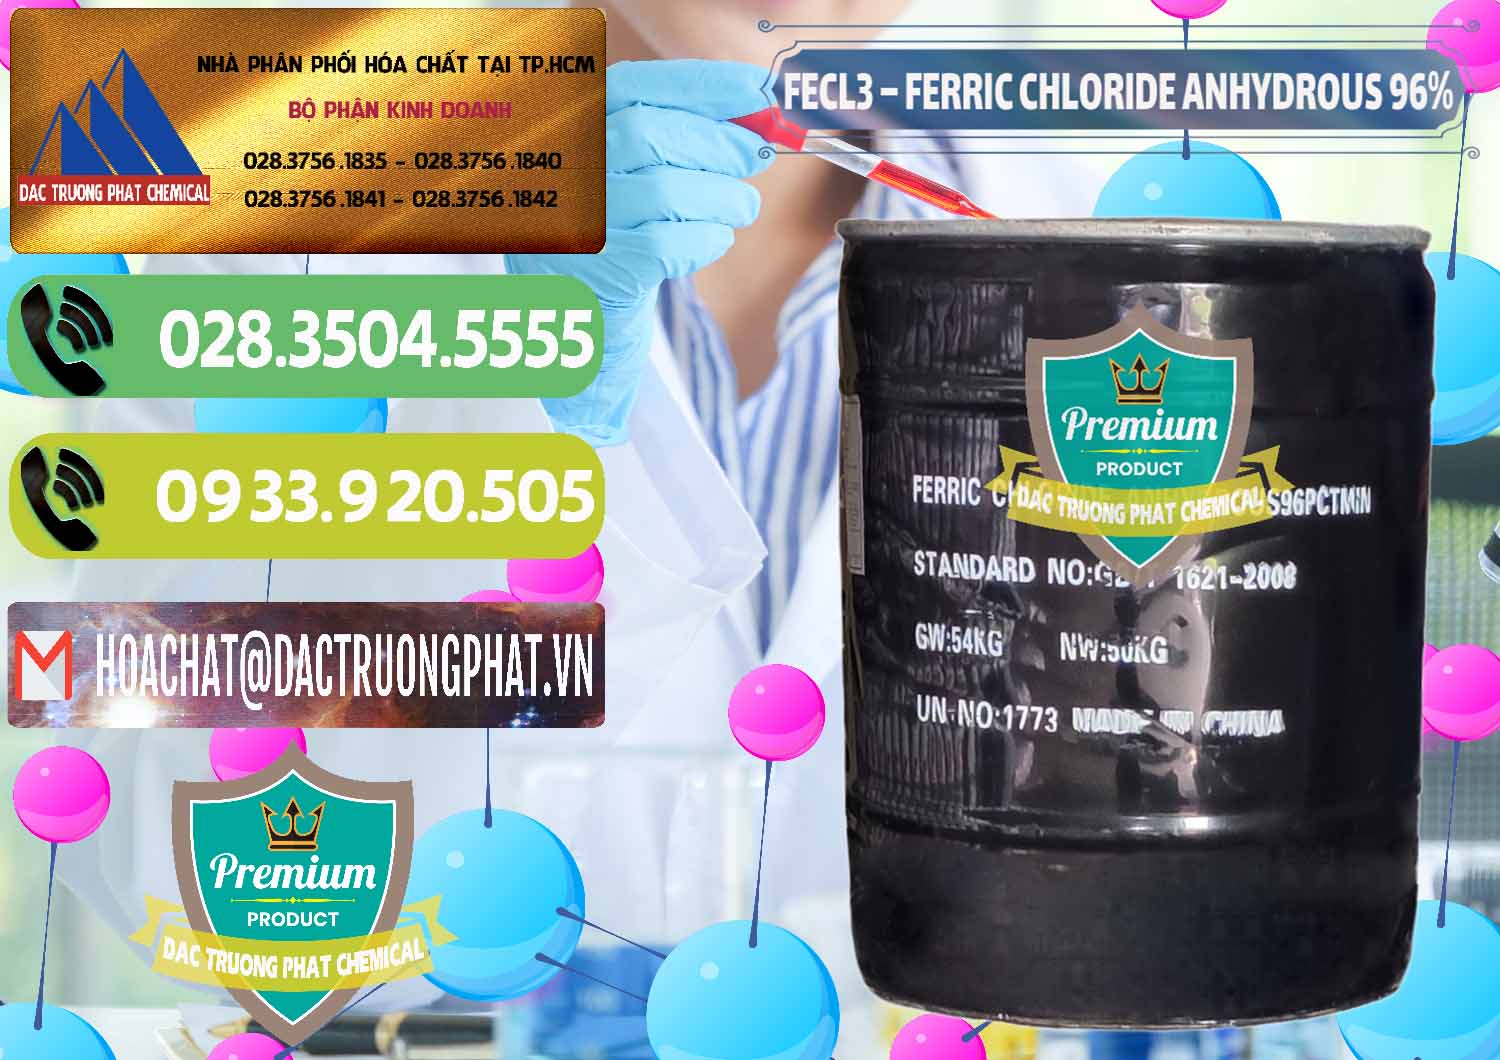 Công ty chuyên phân phối - bán FECL3 – Ferric Chloride Anhydrous 96% Trung Quốc China - 0065 - Kinh doanh và cung cấp hóa chất tại TP.HCM - hoachatmientay.vn